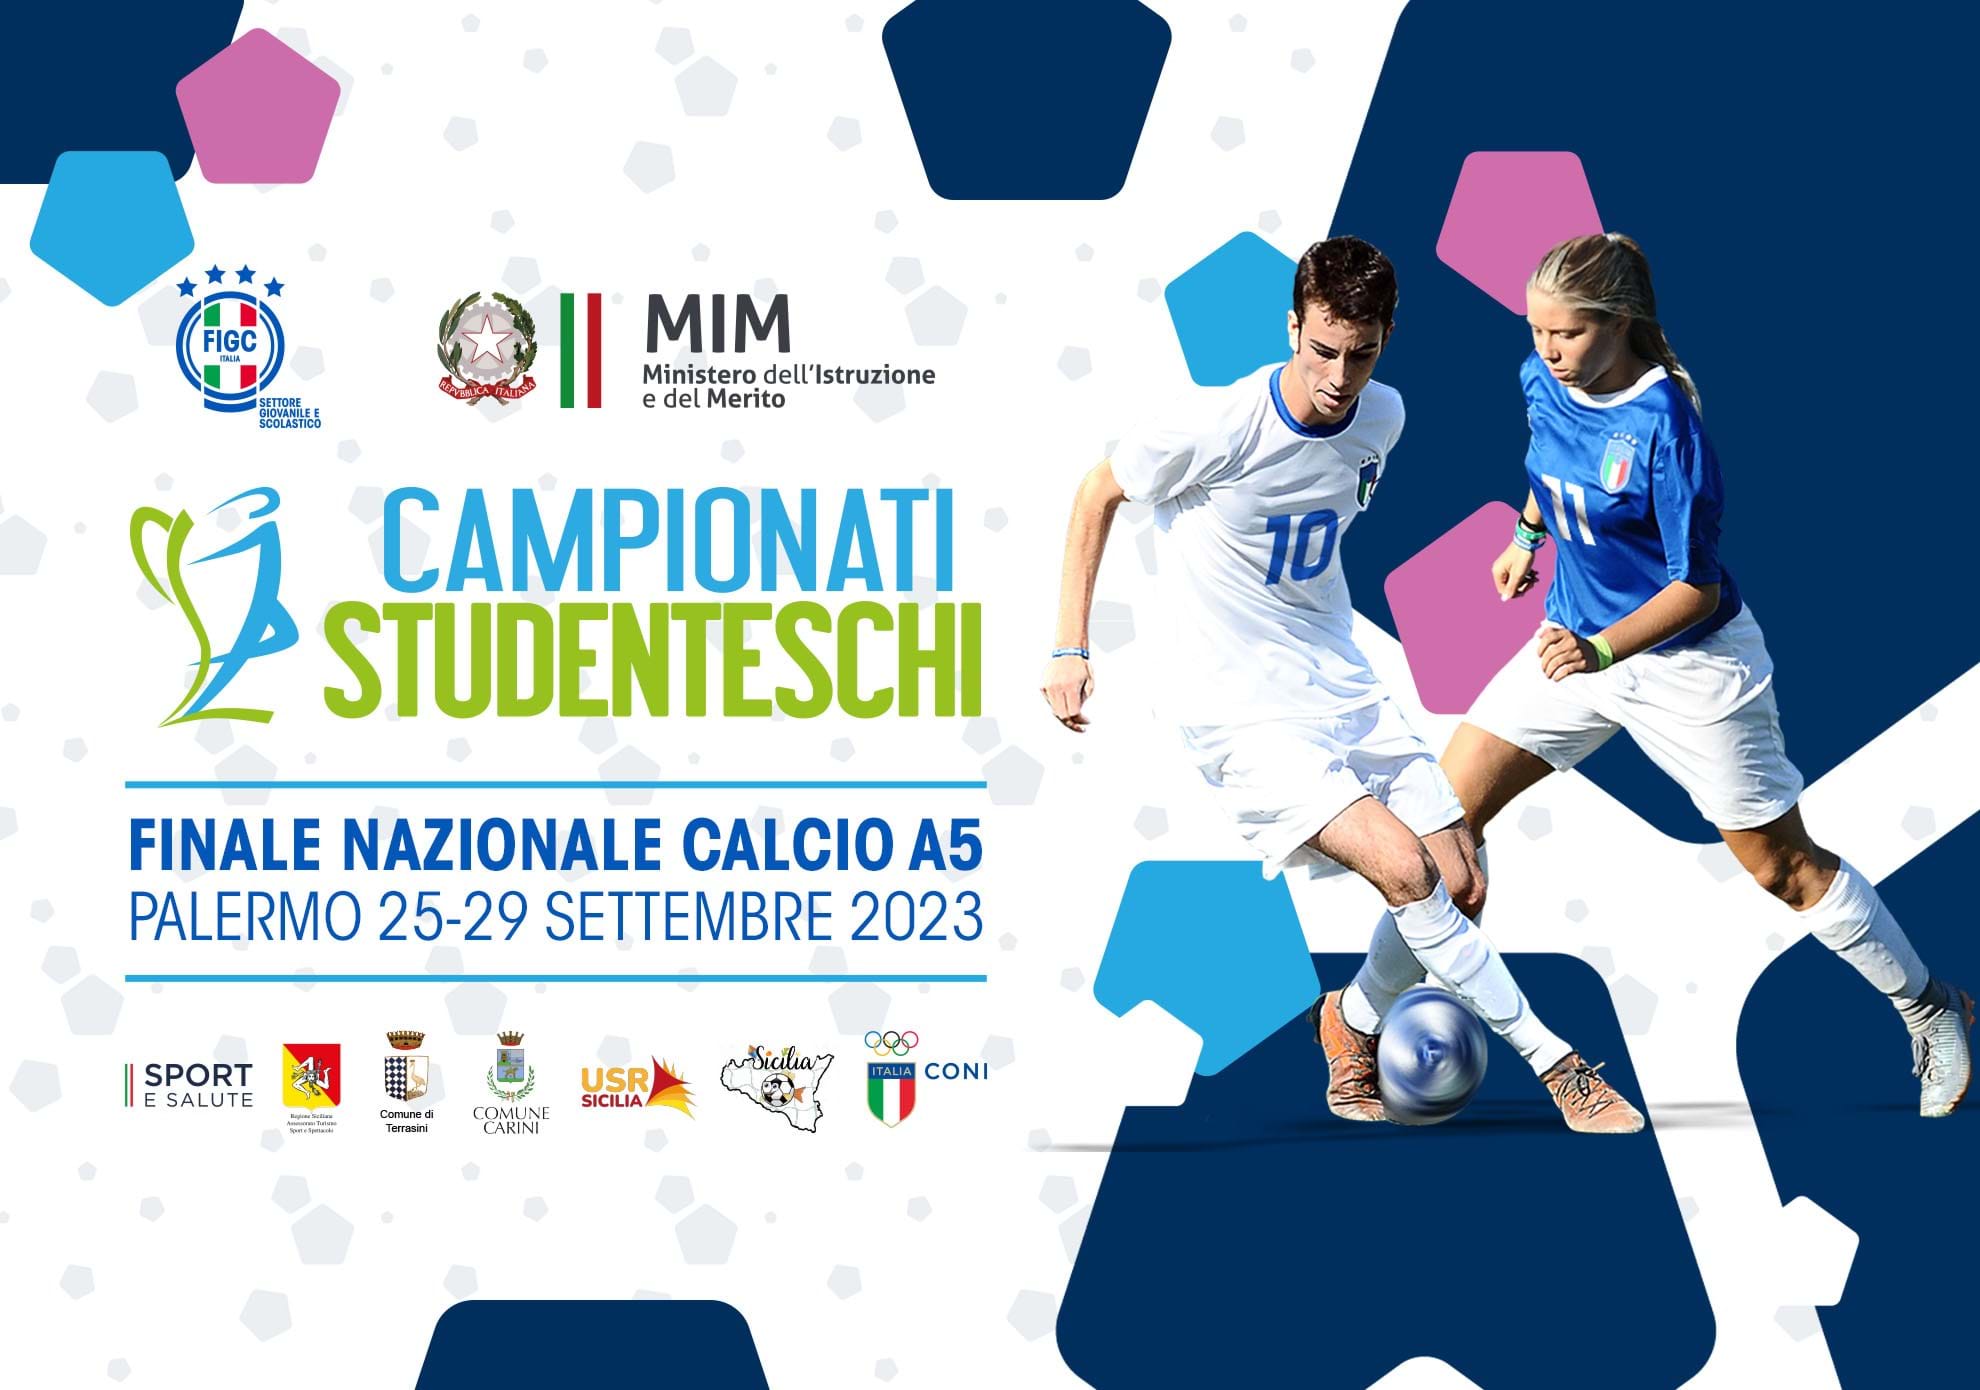 Campionati Studenteschi, a Palermo le finali nazionali di calcio a 5. Gravina e Valditara: 